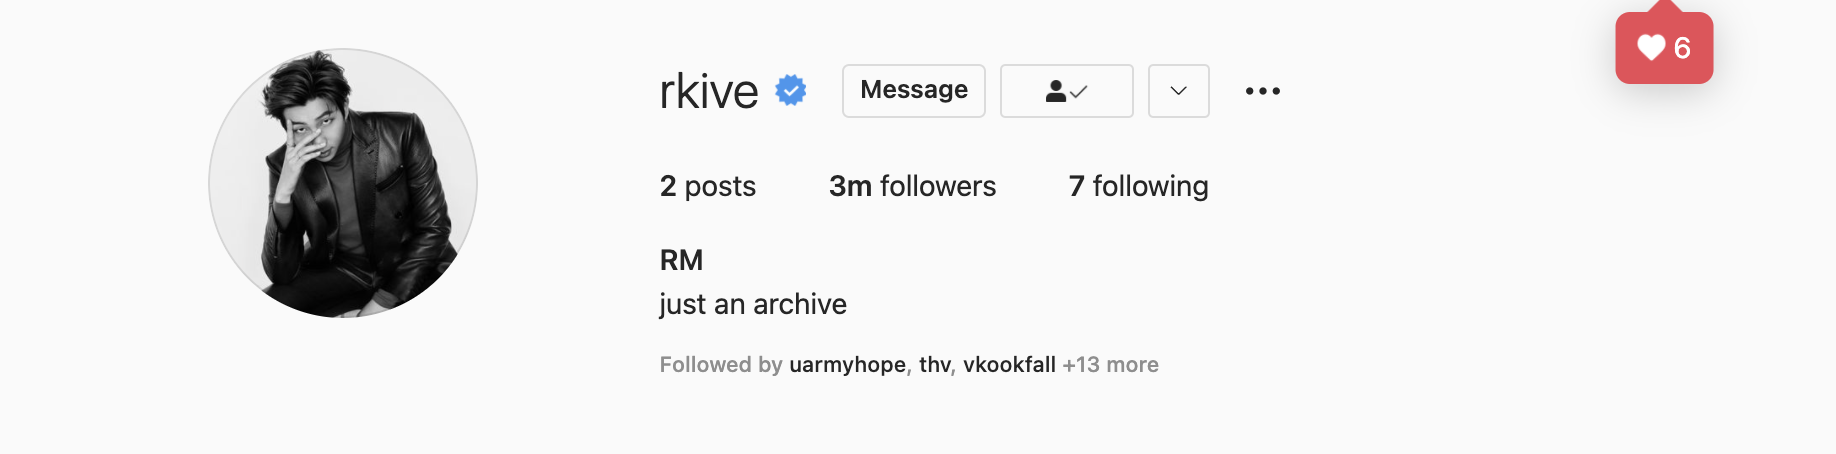 MXH nổ tung vì BTS lập Instagram cá nhân sau 8 năm: Lập kỷ lục follow, nhưng 7 tài khoản cùng có 1 điểm lạ khiến fan bất bình - Ảnh 5.